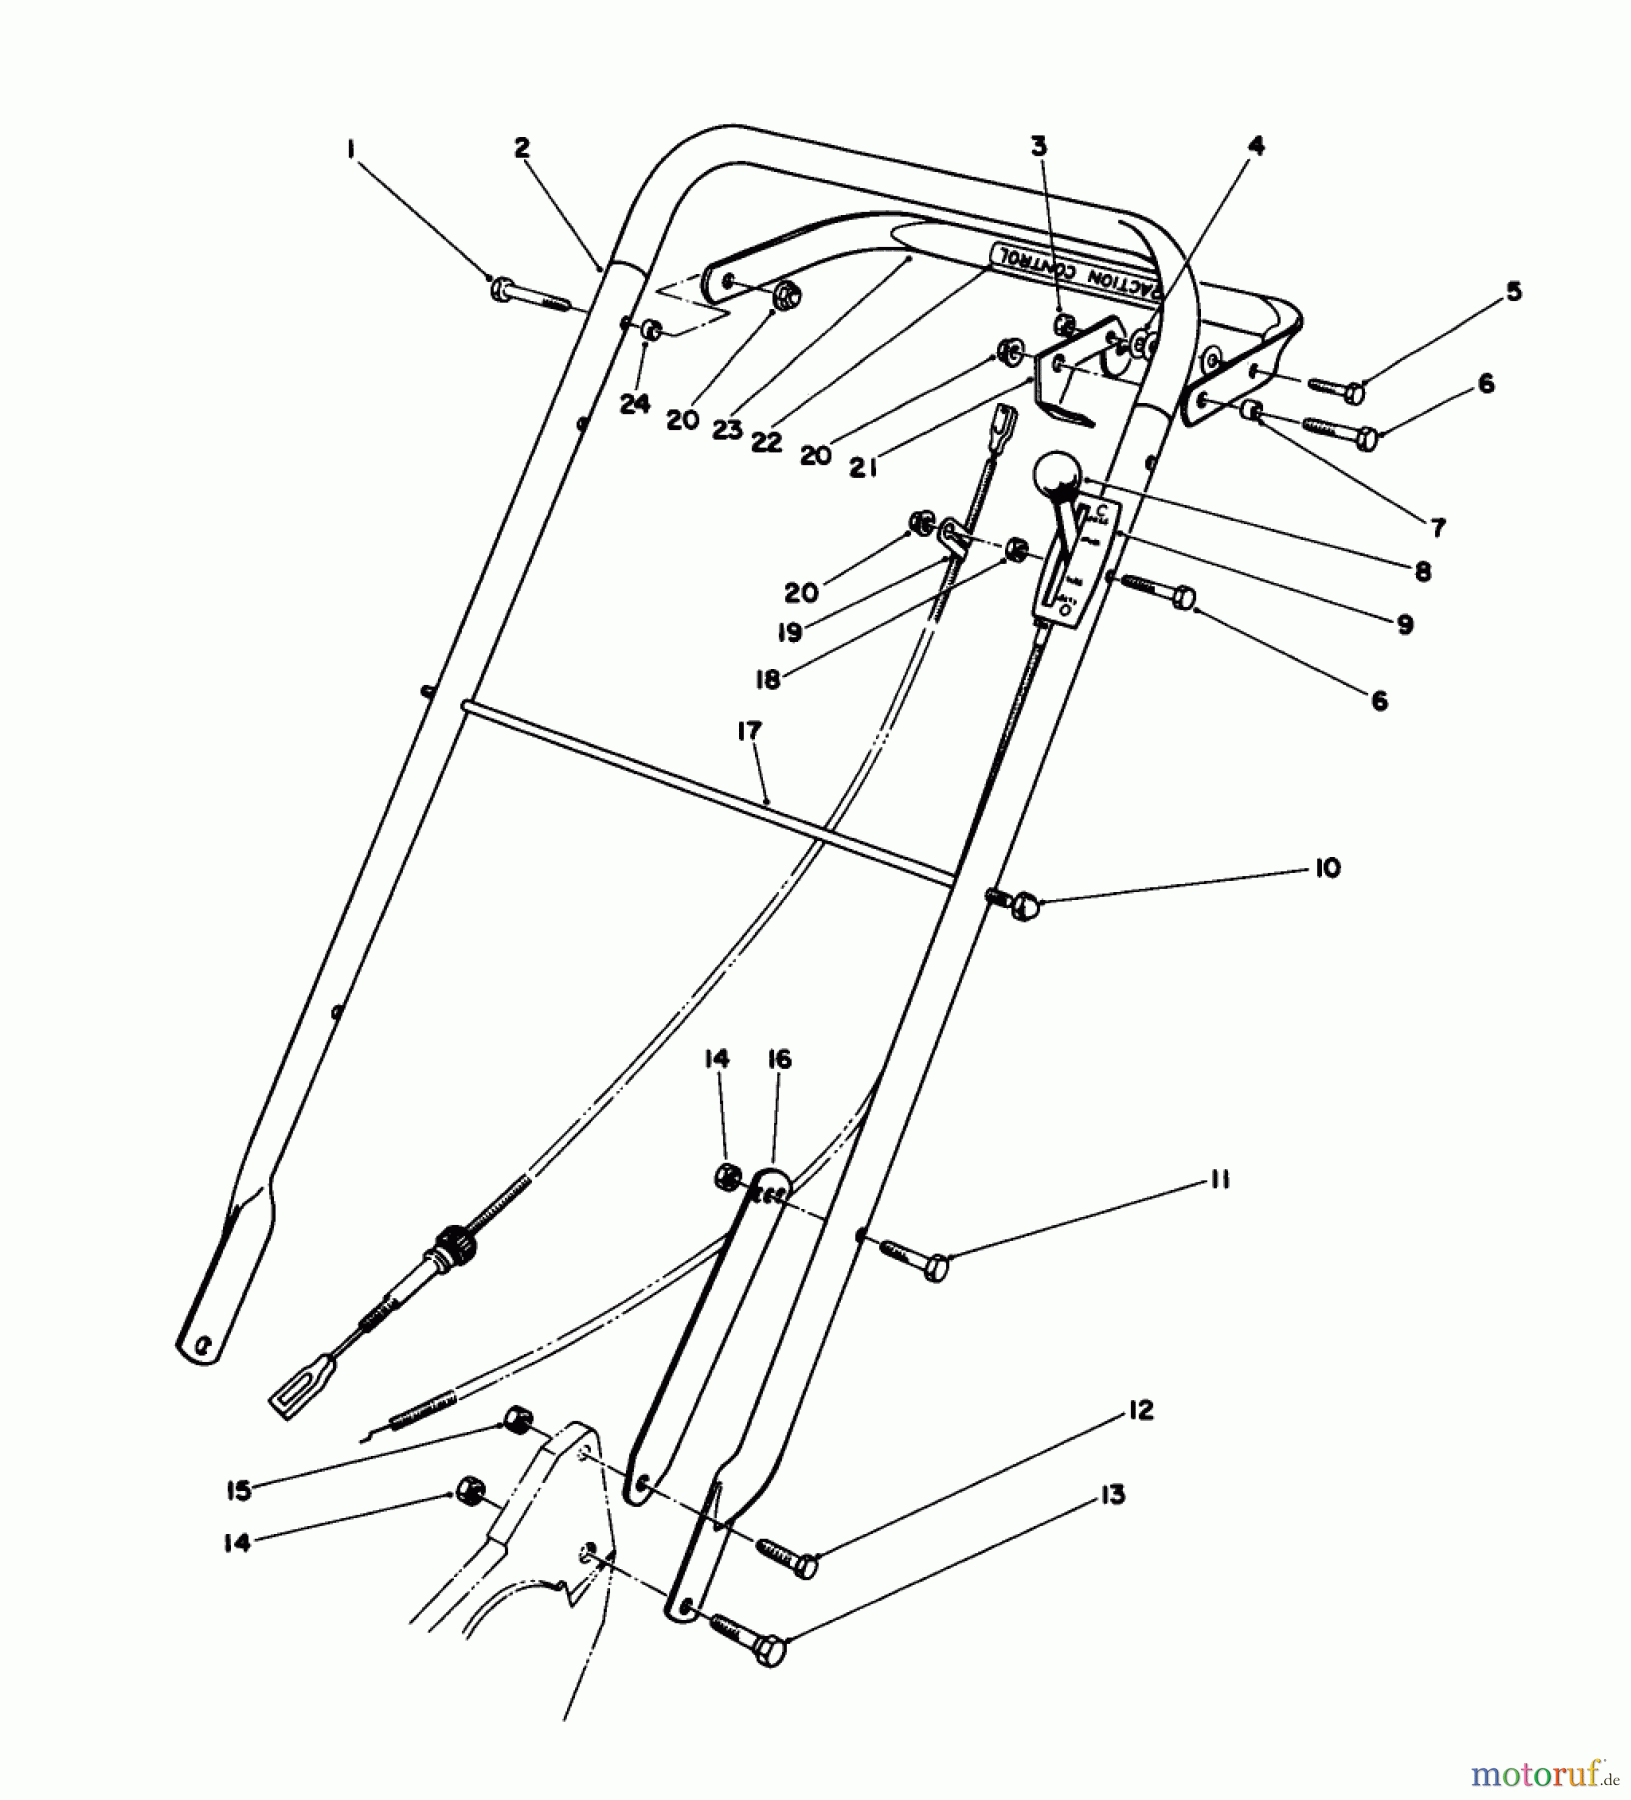  Toro Neu Mowers, Walk-Behind Seite 2 22030 - Toro Lawnmower, 1986 (6000001-6999999) HANDLE ASSEMBLY (MODEL 22035)